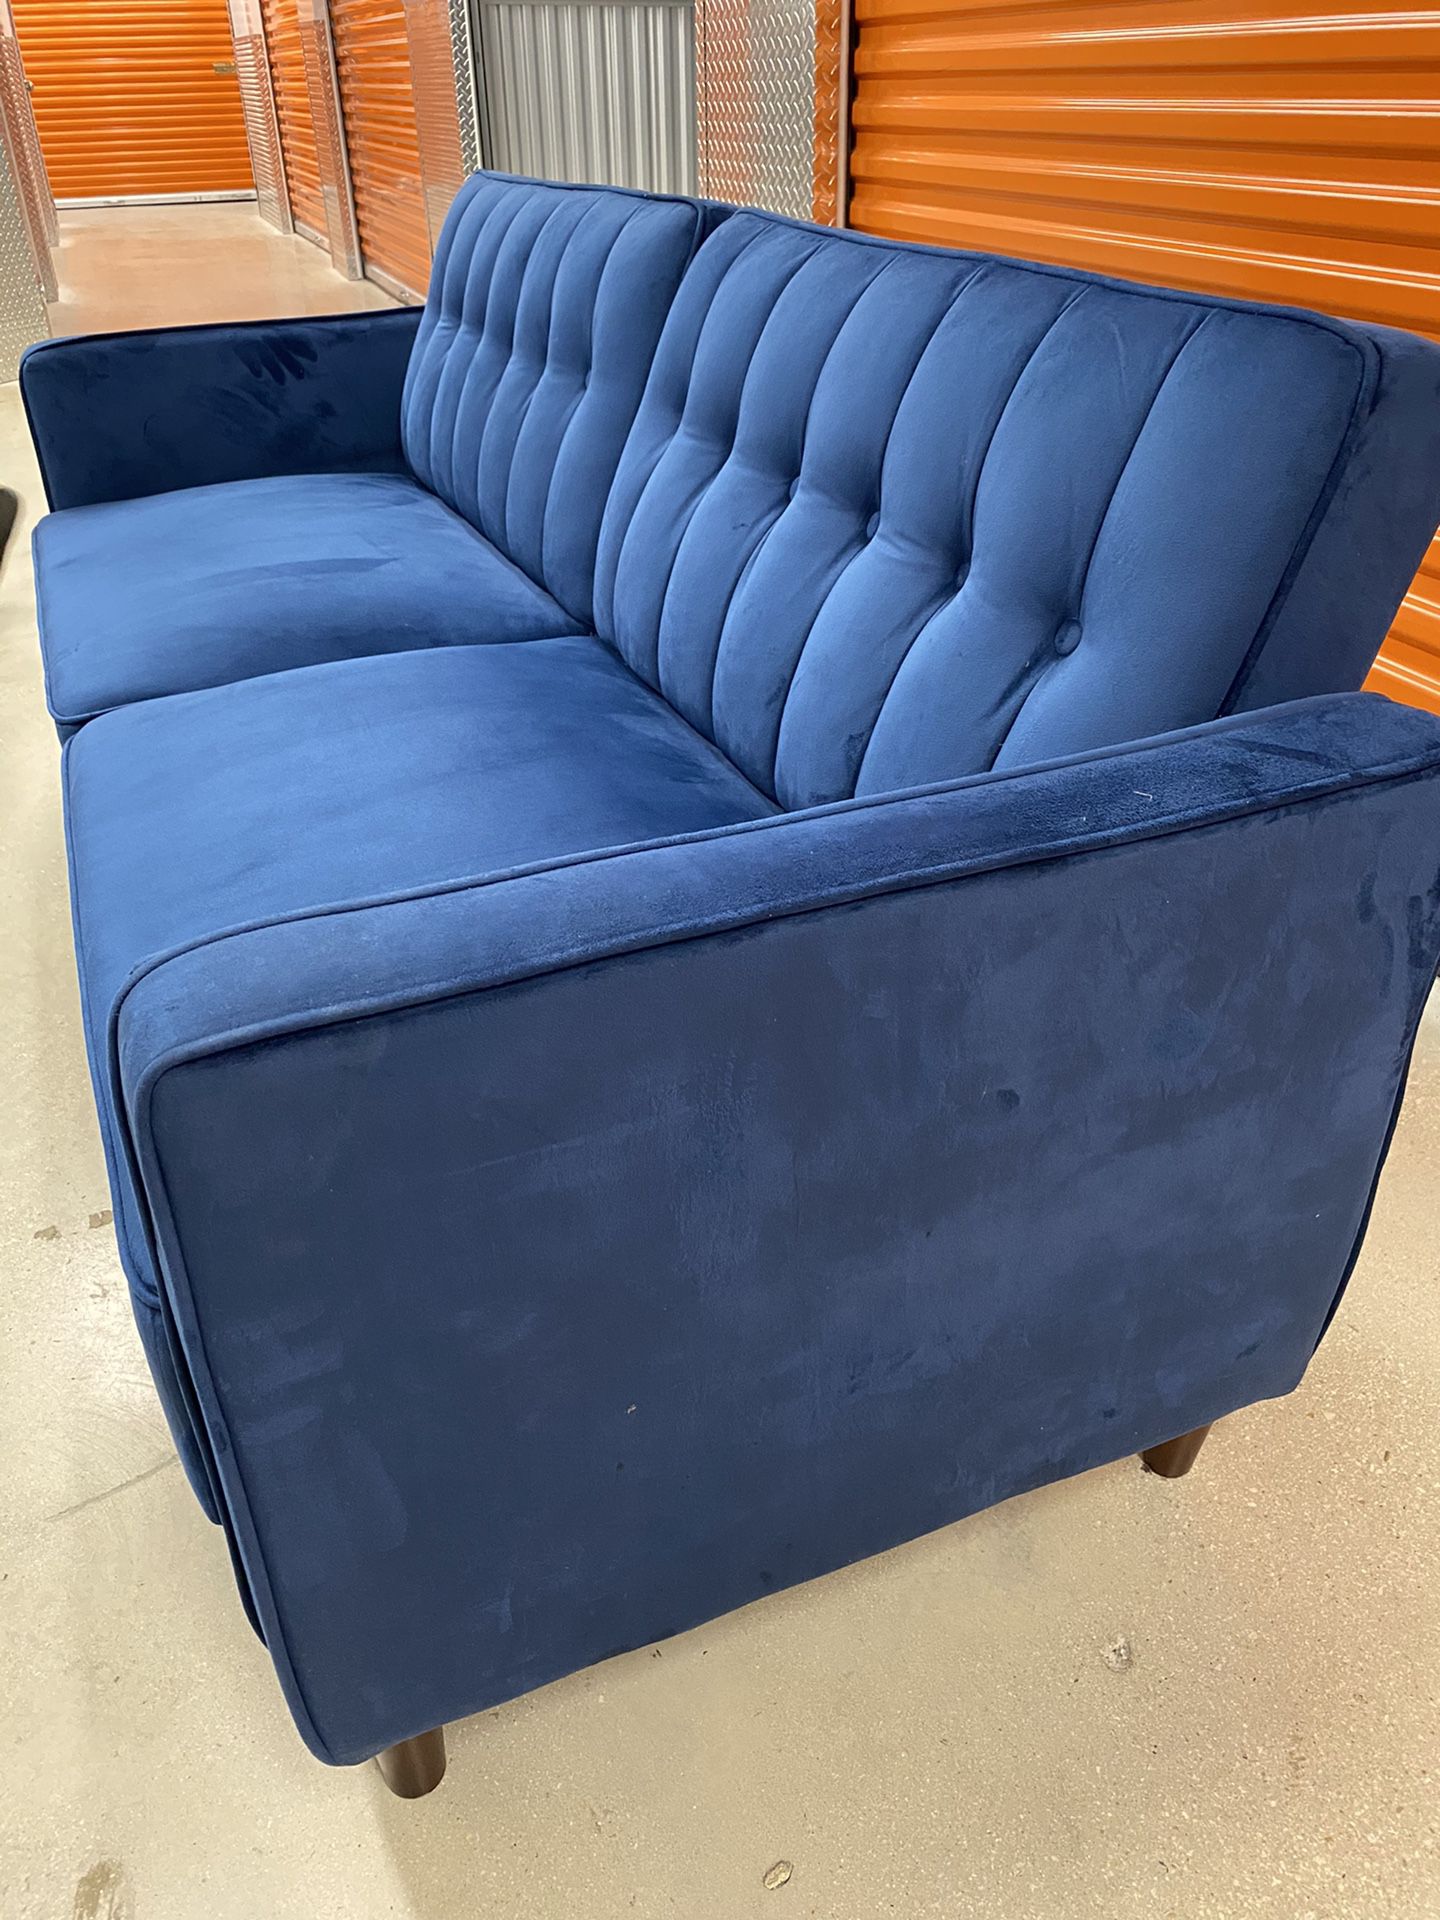 Sofa futon